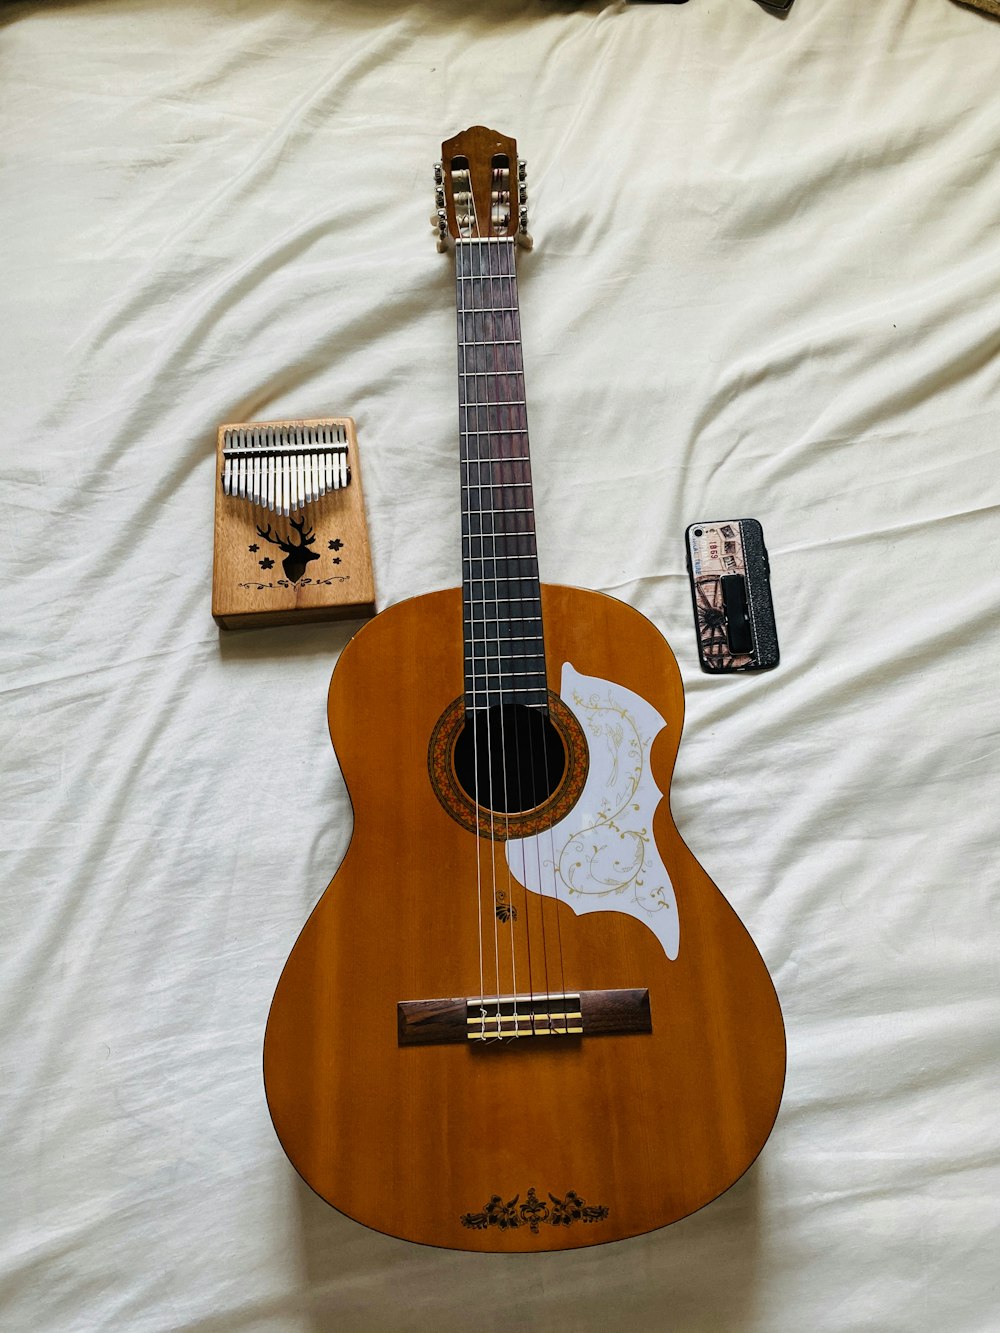 chitarra acustica marrone su tessuto bianco